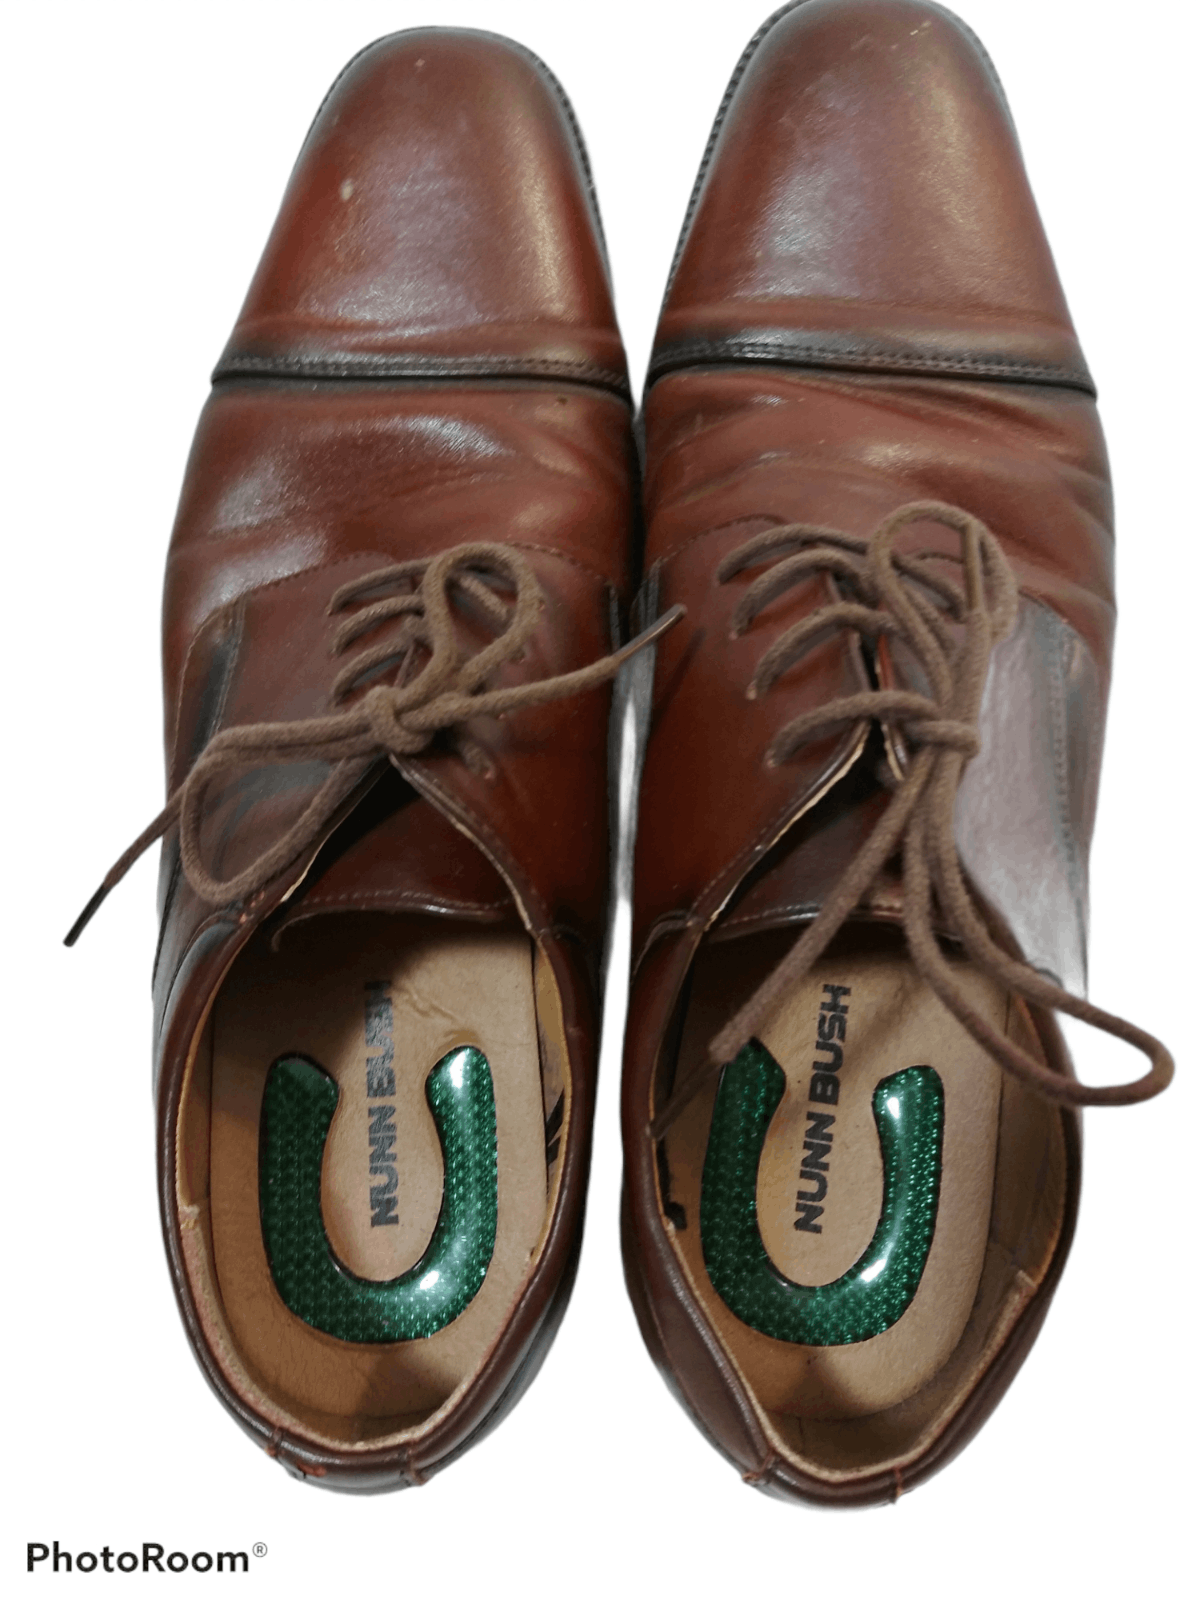 Nunn Bush Nunn Bush Men's Oxford Leather Dress Shoes Brown Size US 9 / EU 42 - 2 Preview